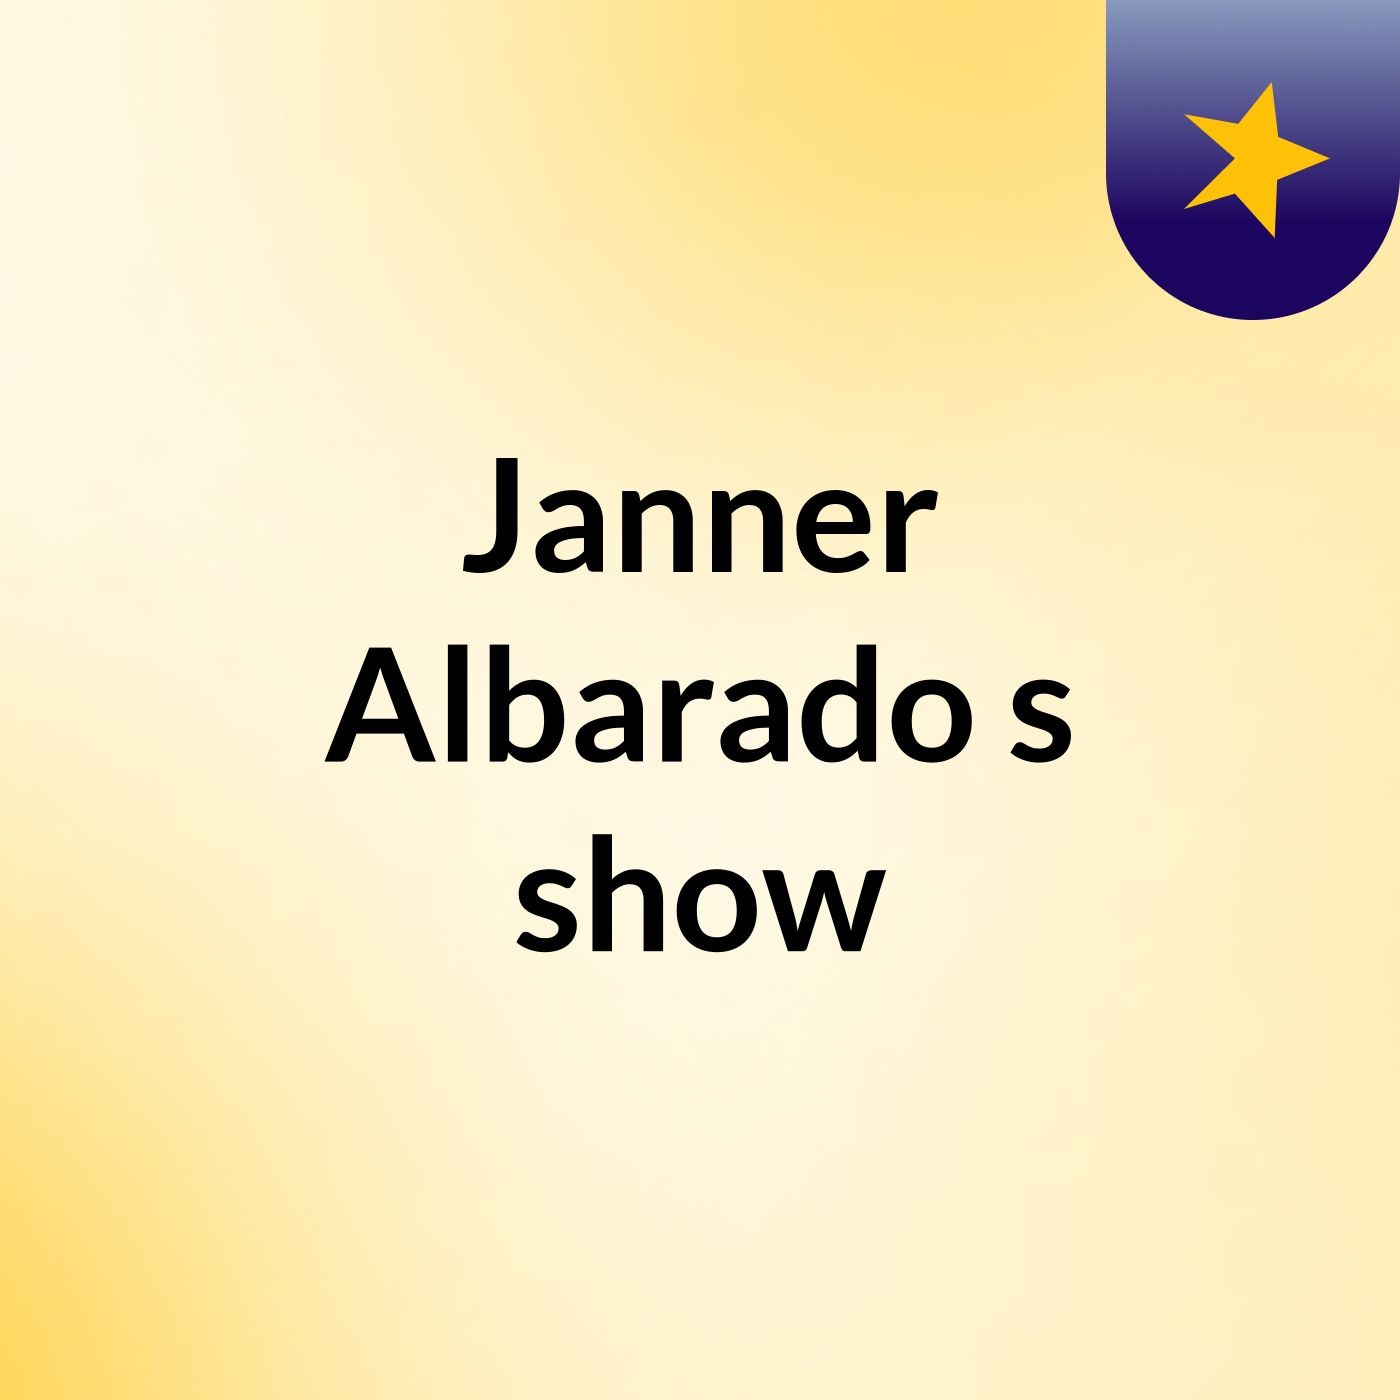 Janner Albarado's show